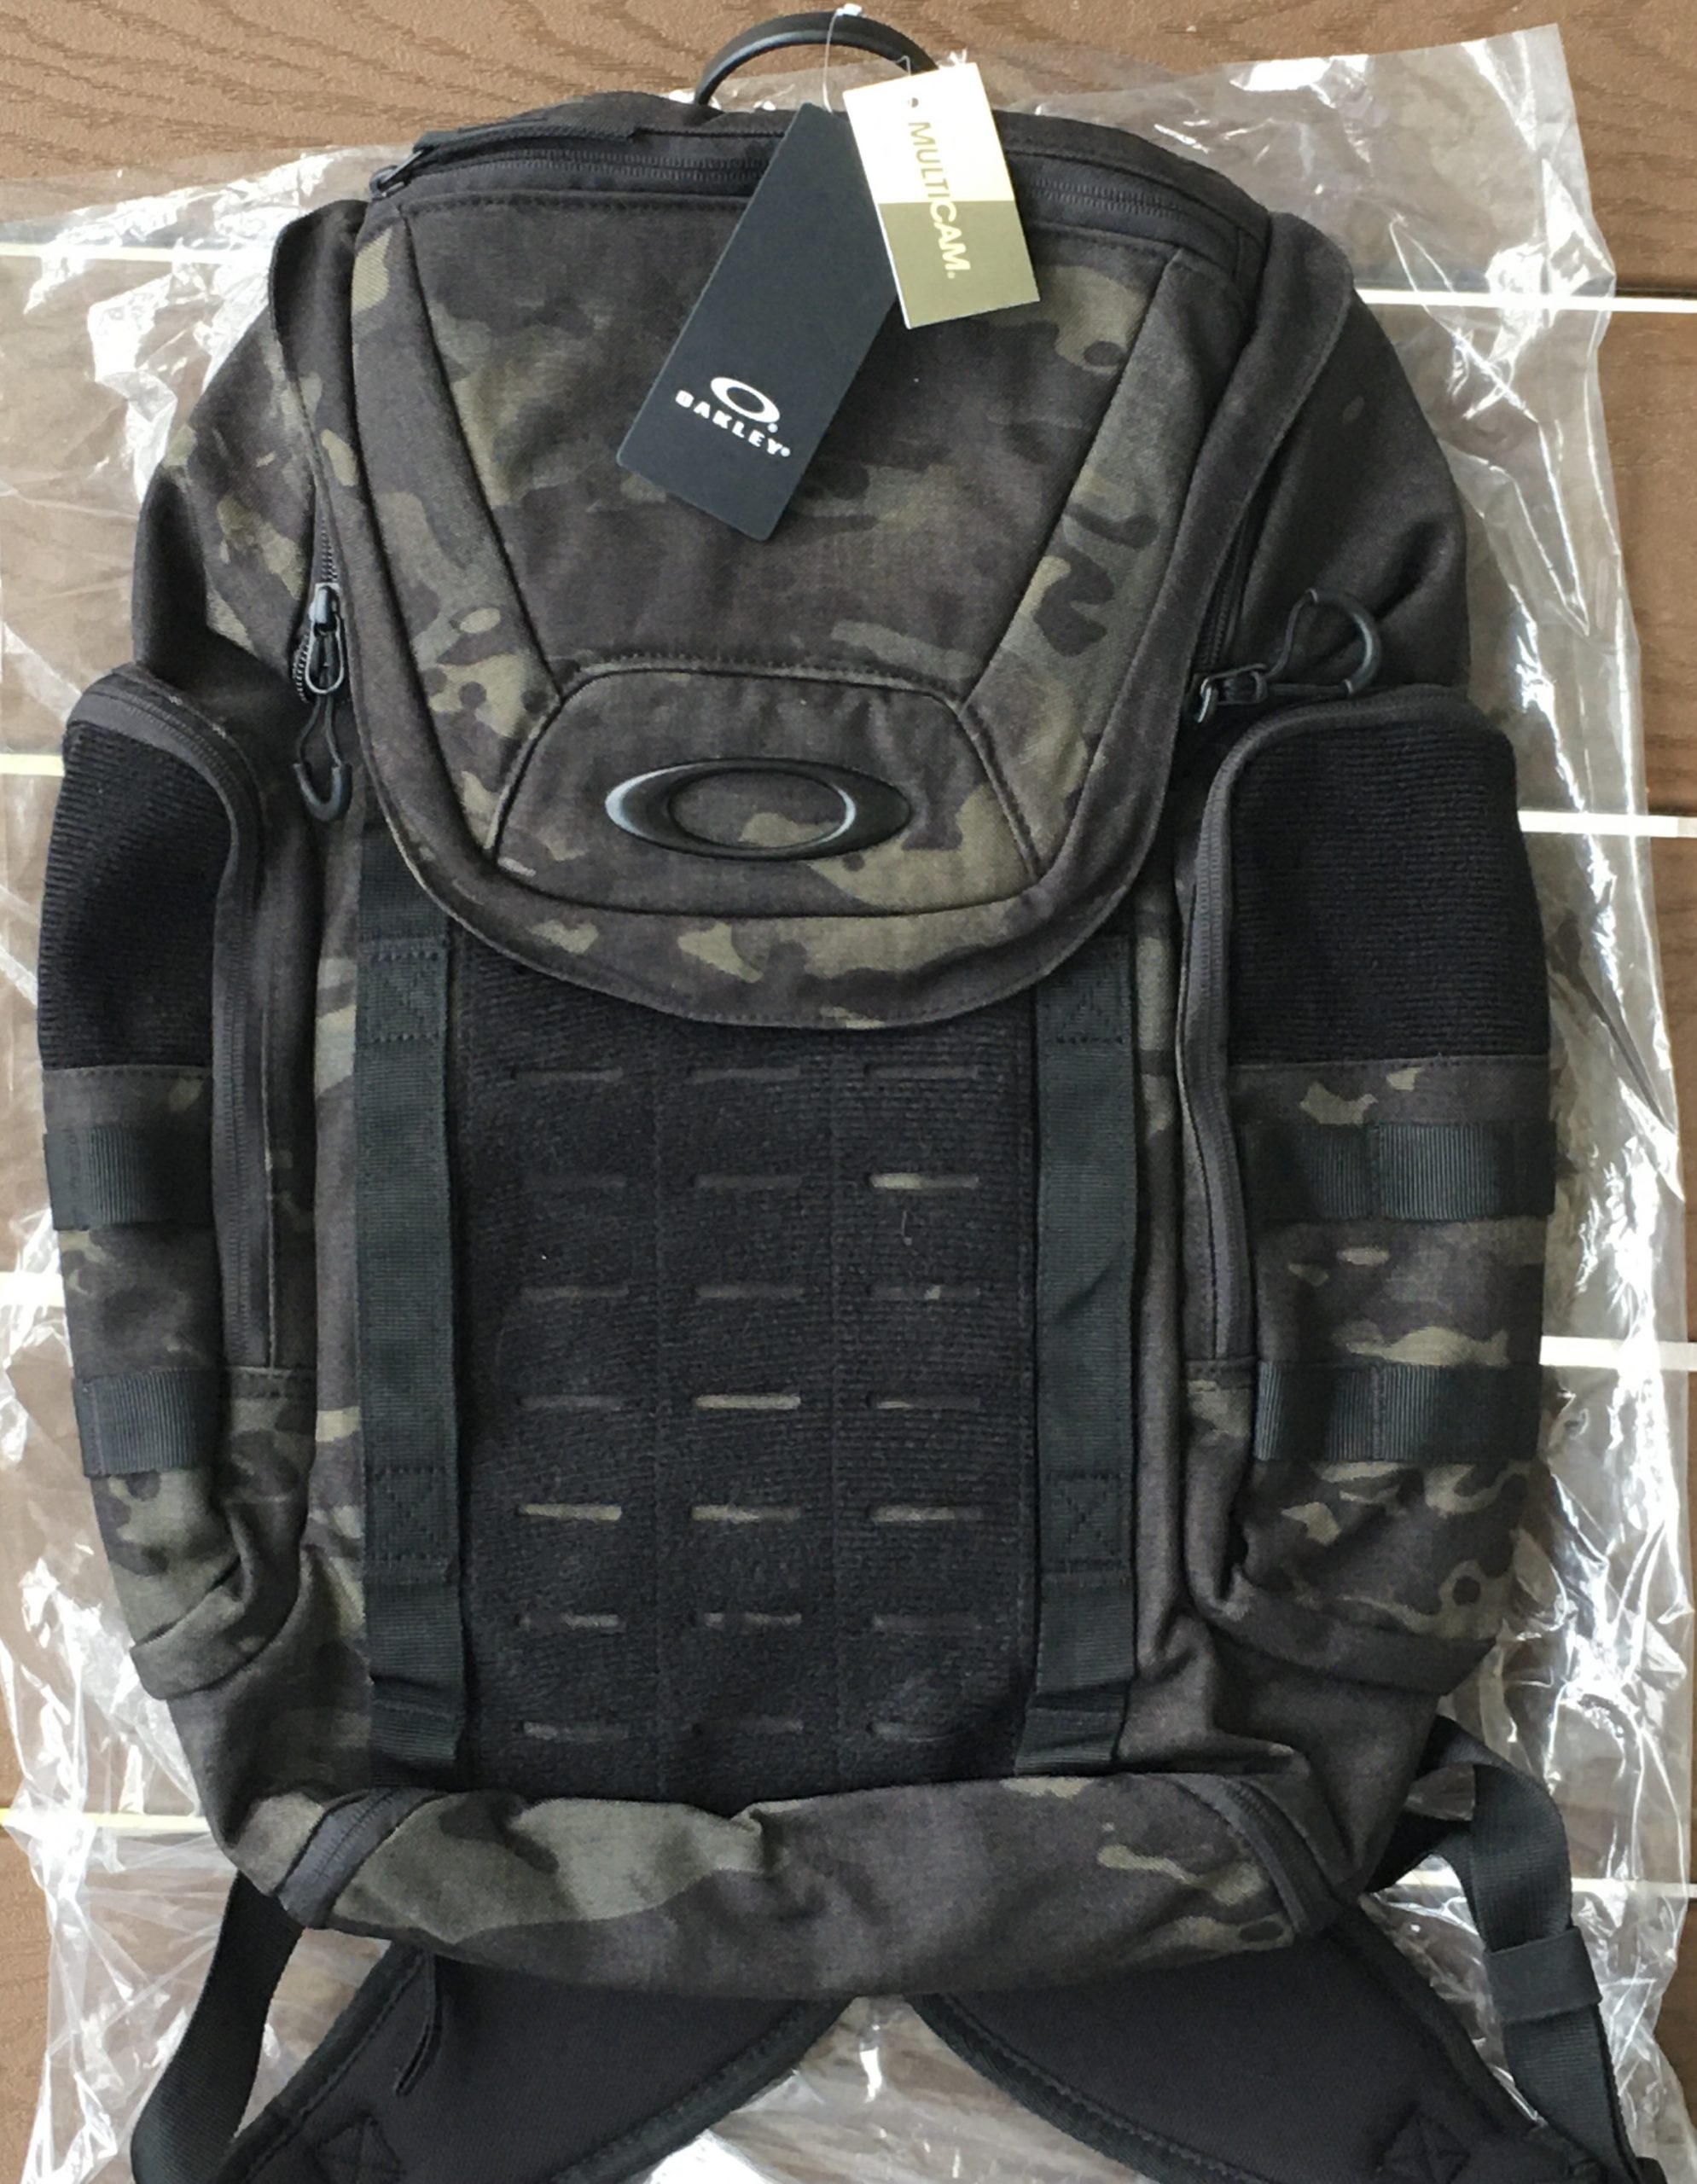 oakley link pack miltac backpack